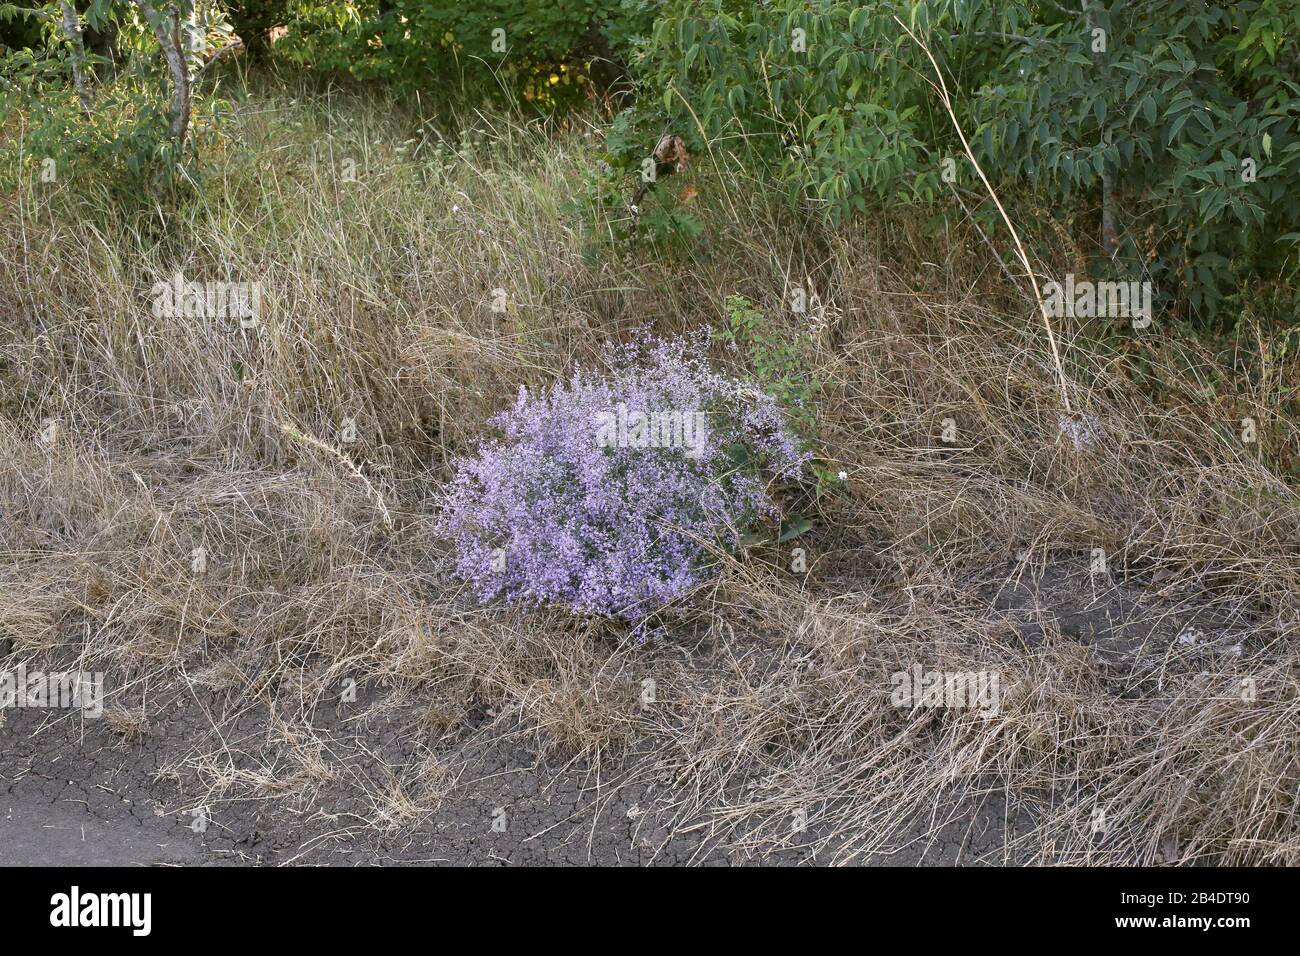 Limonium latifolium - Wild plant shot in summer. Stock Photo